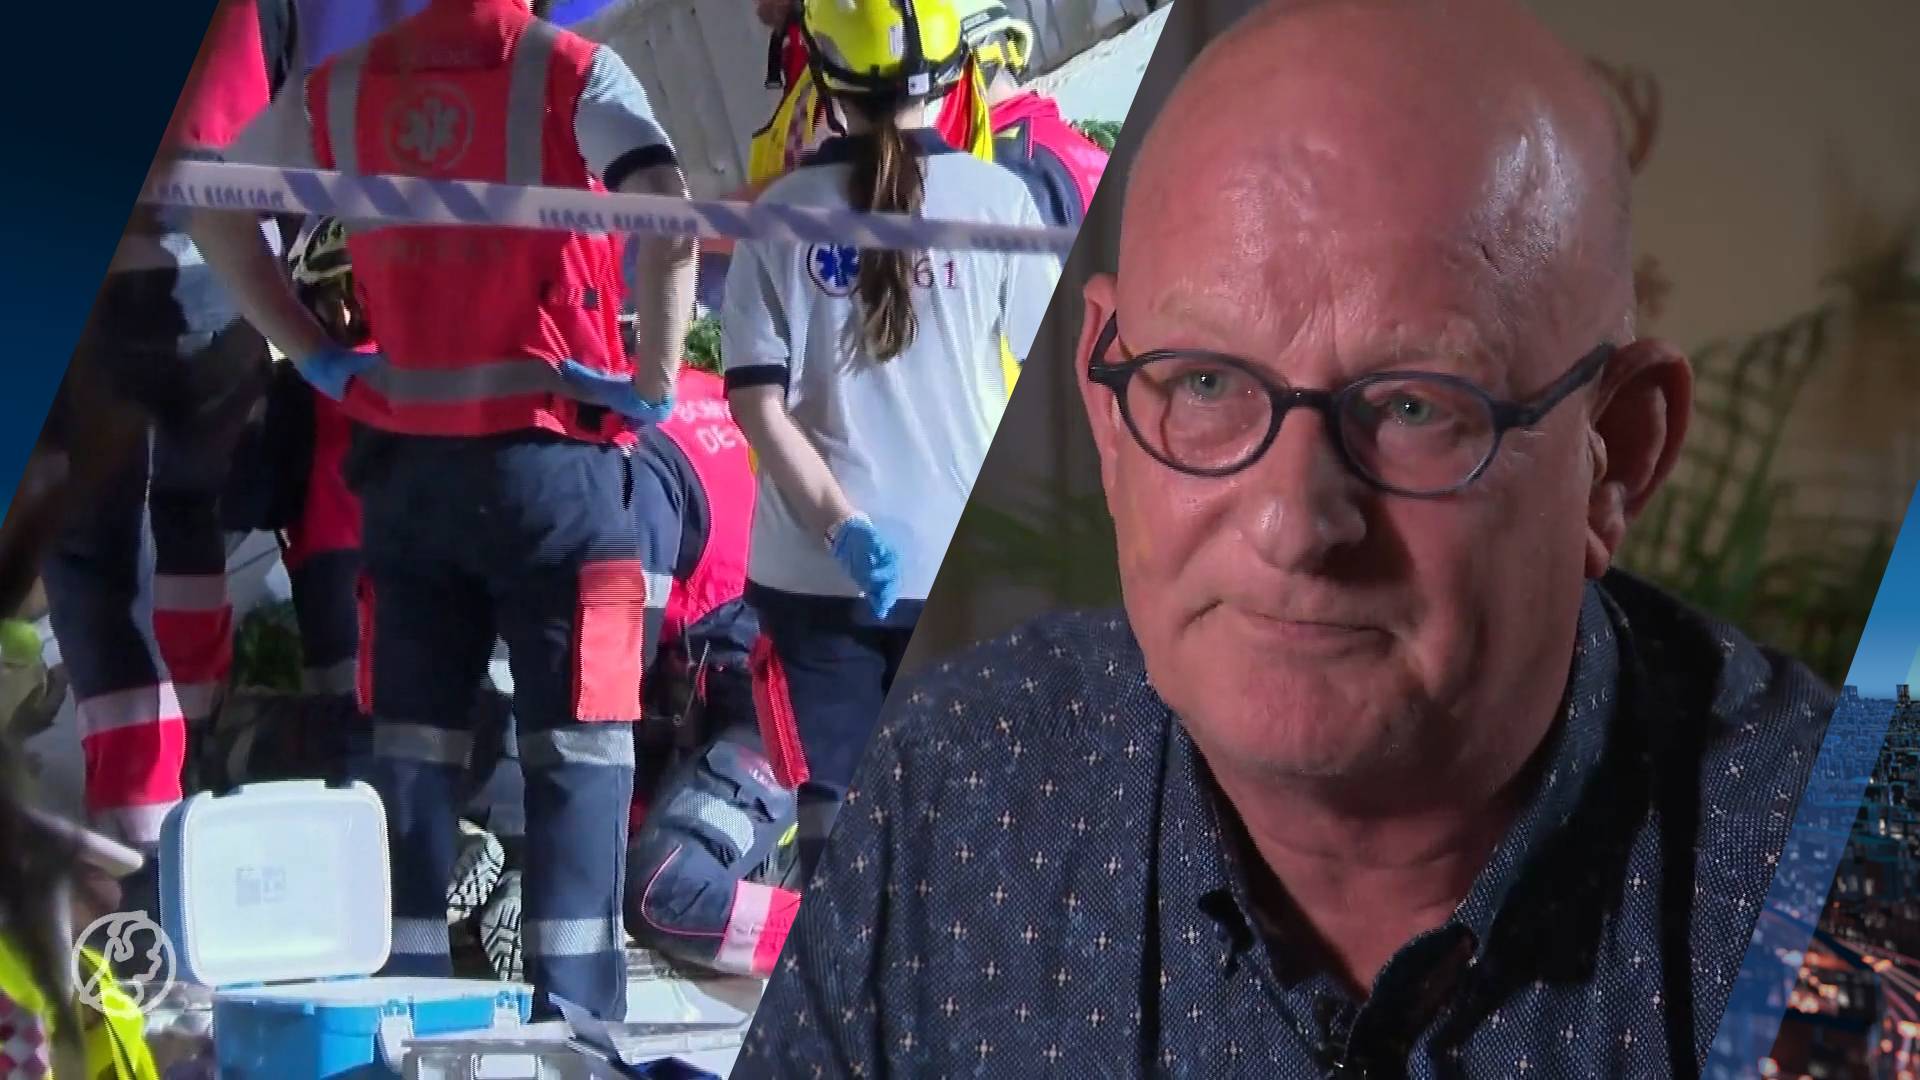 Frank's dochter raakte gewond bij drama Mallorca: 'Iedereen zat onder het bloed' 